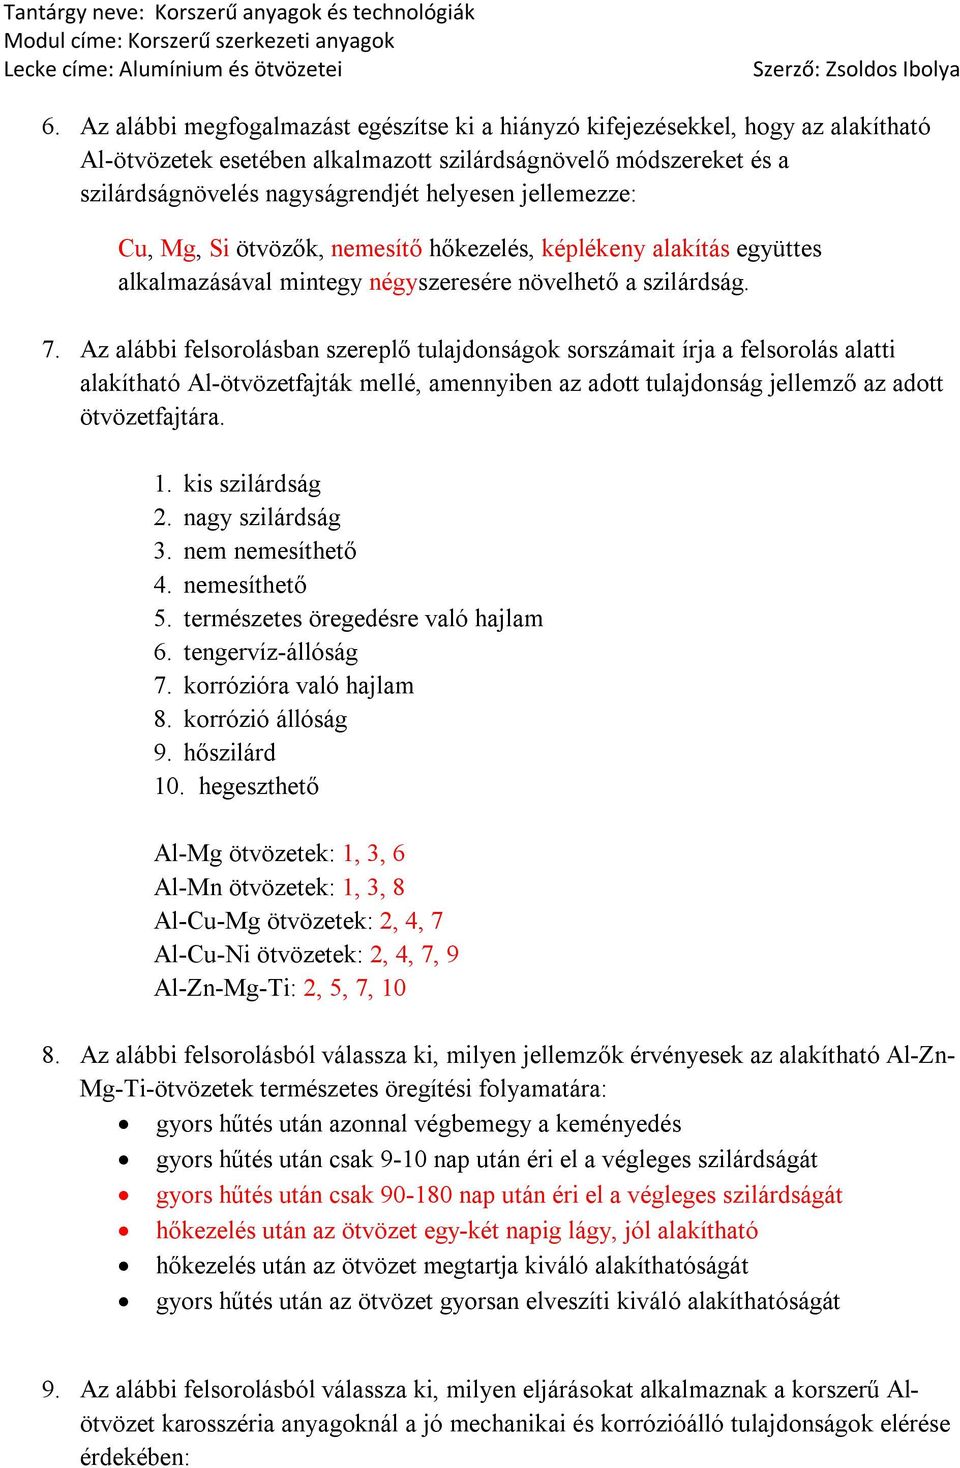 Az alábbi felsorolásban szereplő tulajdonságok sorszámait írja a felsorolás alatti alakítható Al-ötvözetfajták mellé, amennyiben az adott tulajdonság jellemző az adott ötvözetfajtára. 1.